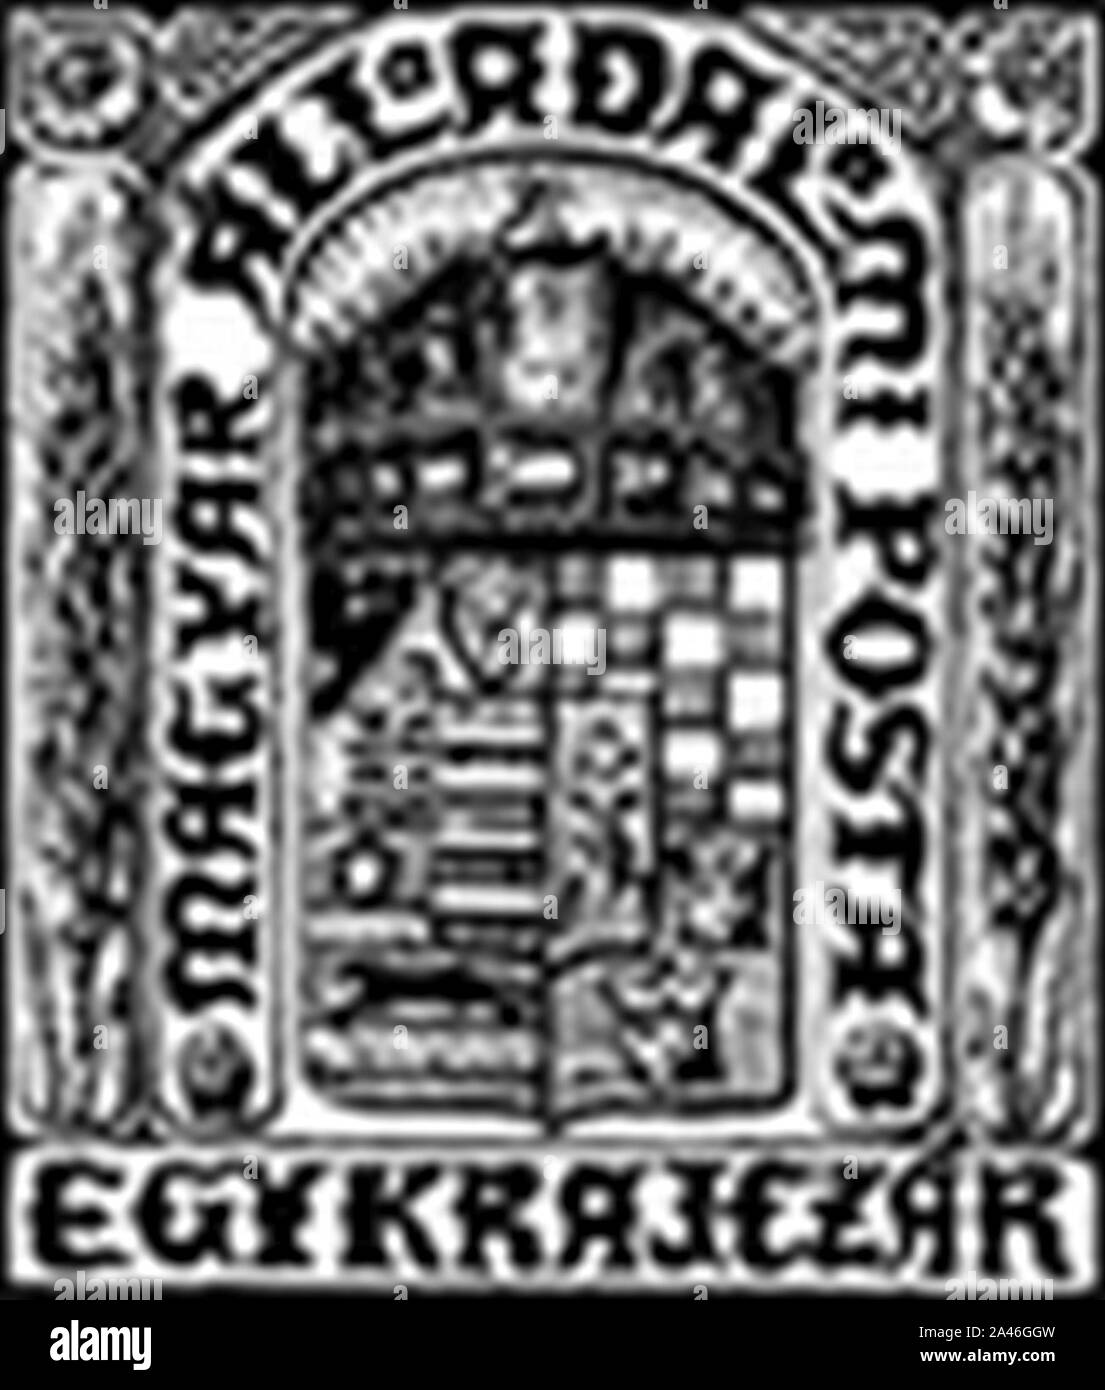 Premier timbre hongrois design. Banque D'Images